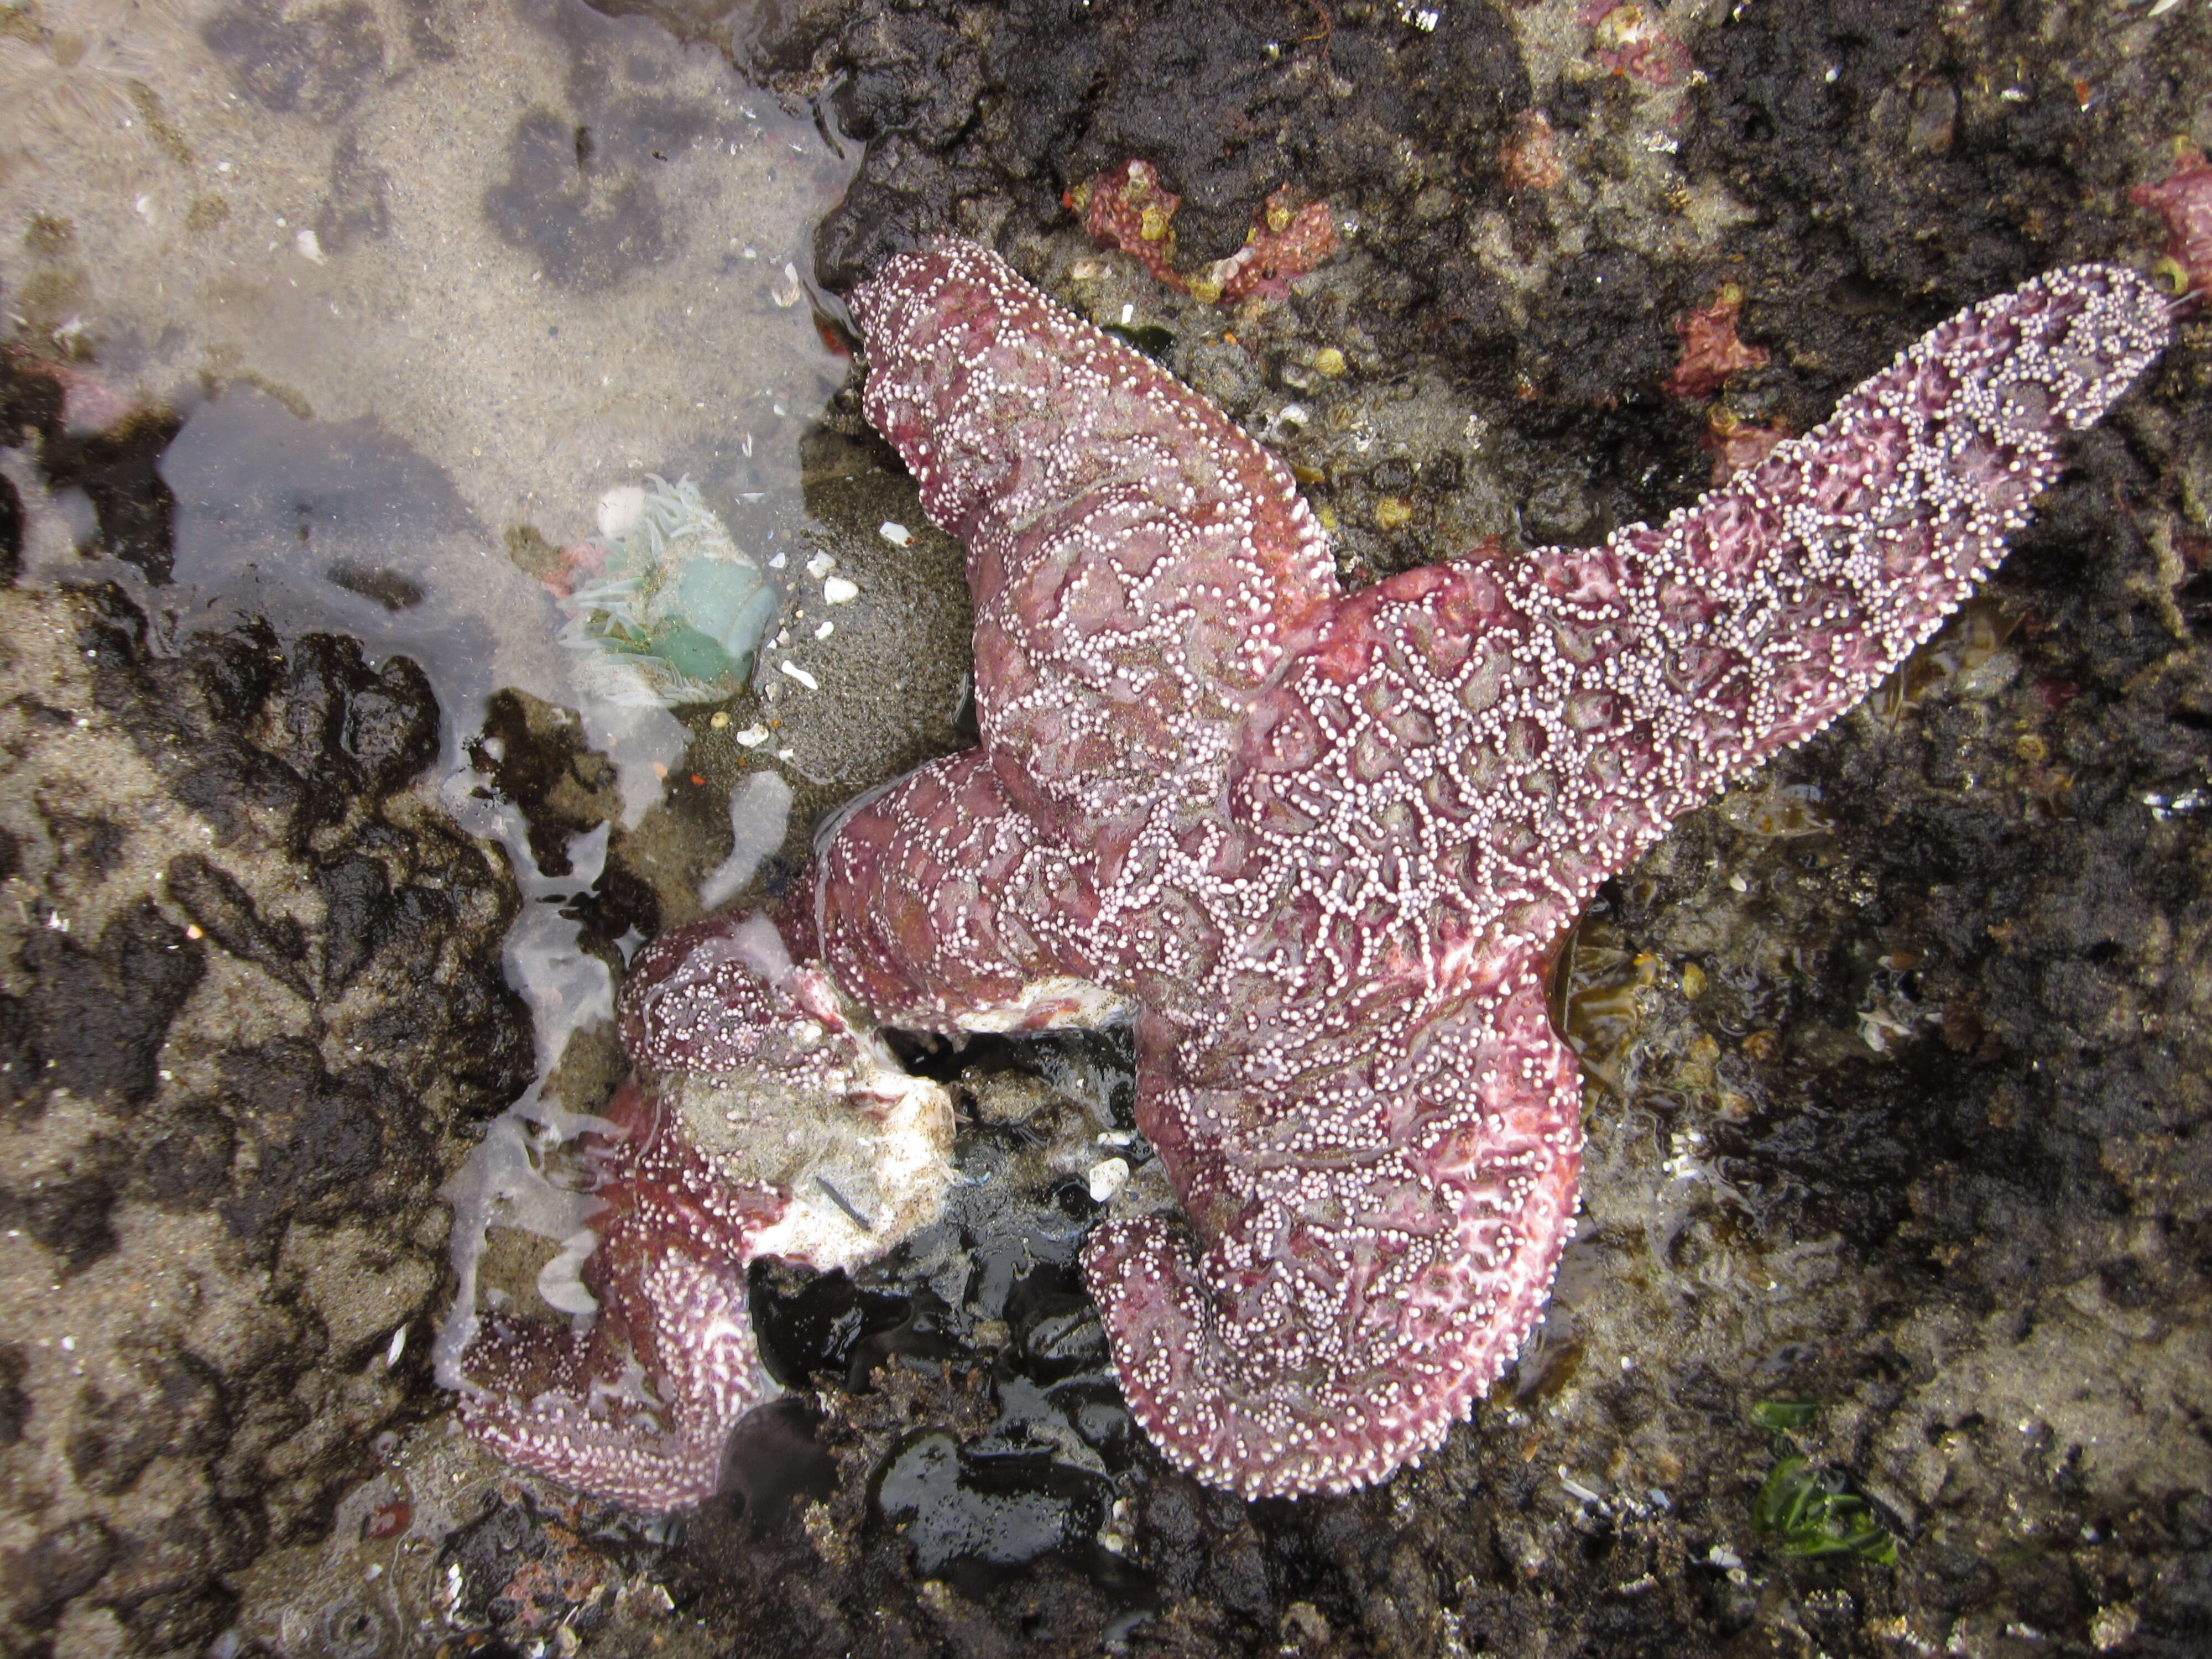 Image of ochre sea star